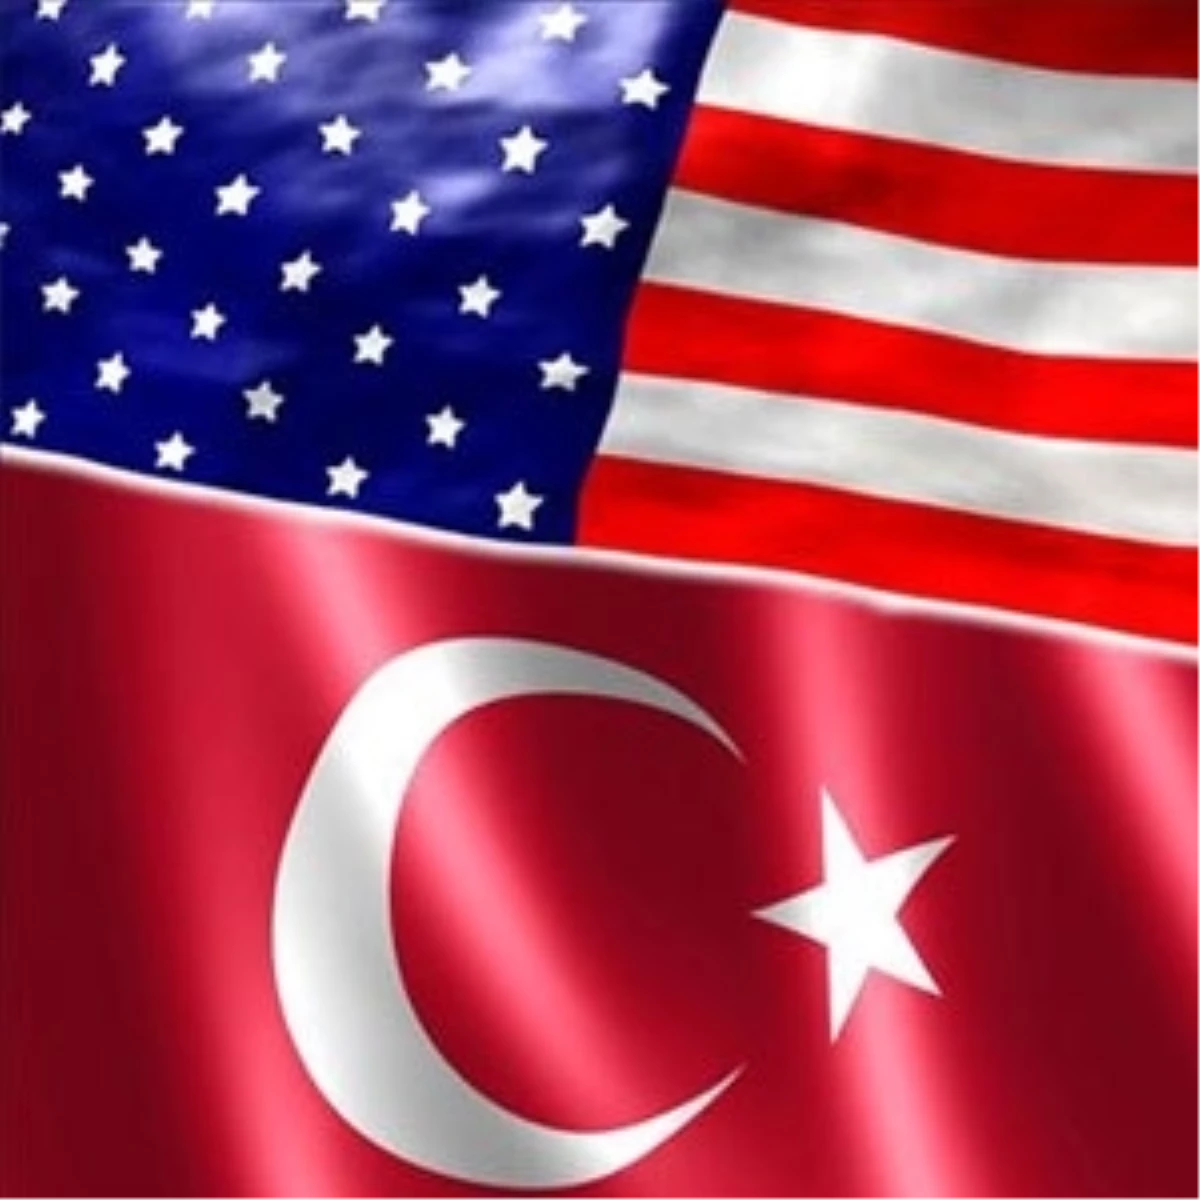 Türkiye-Abd "Model Ortaklığı" Washington\'da Tartışılacak